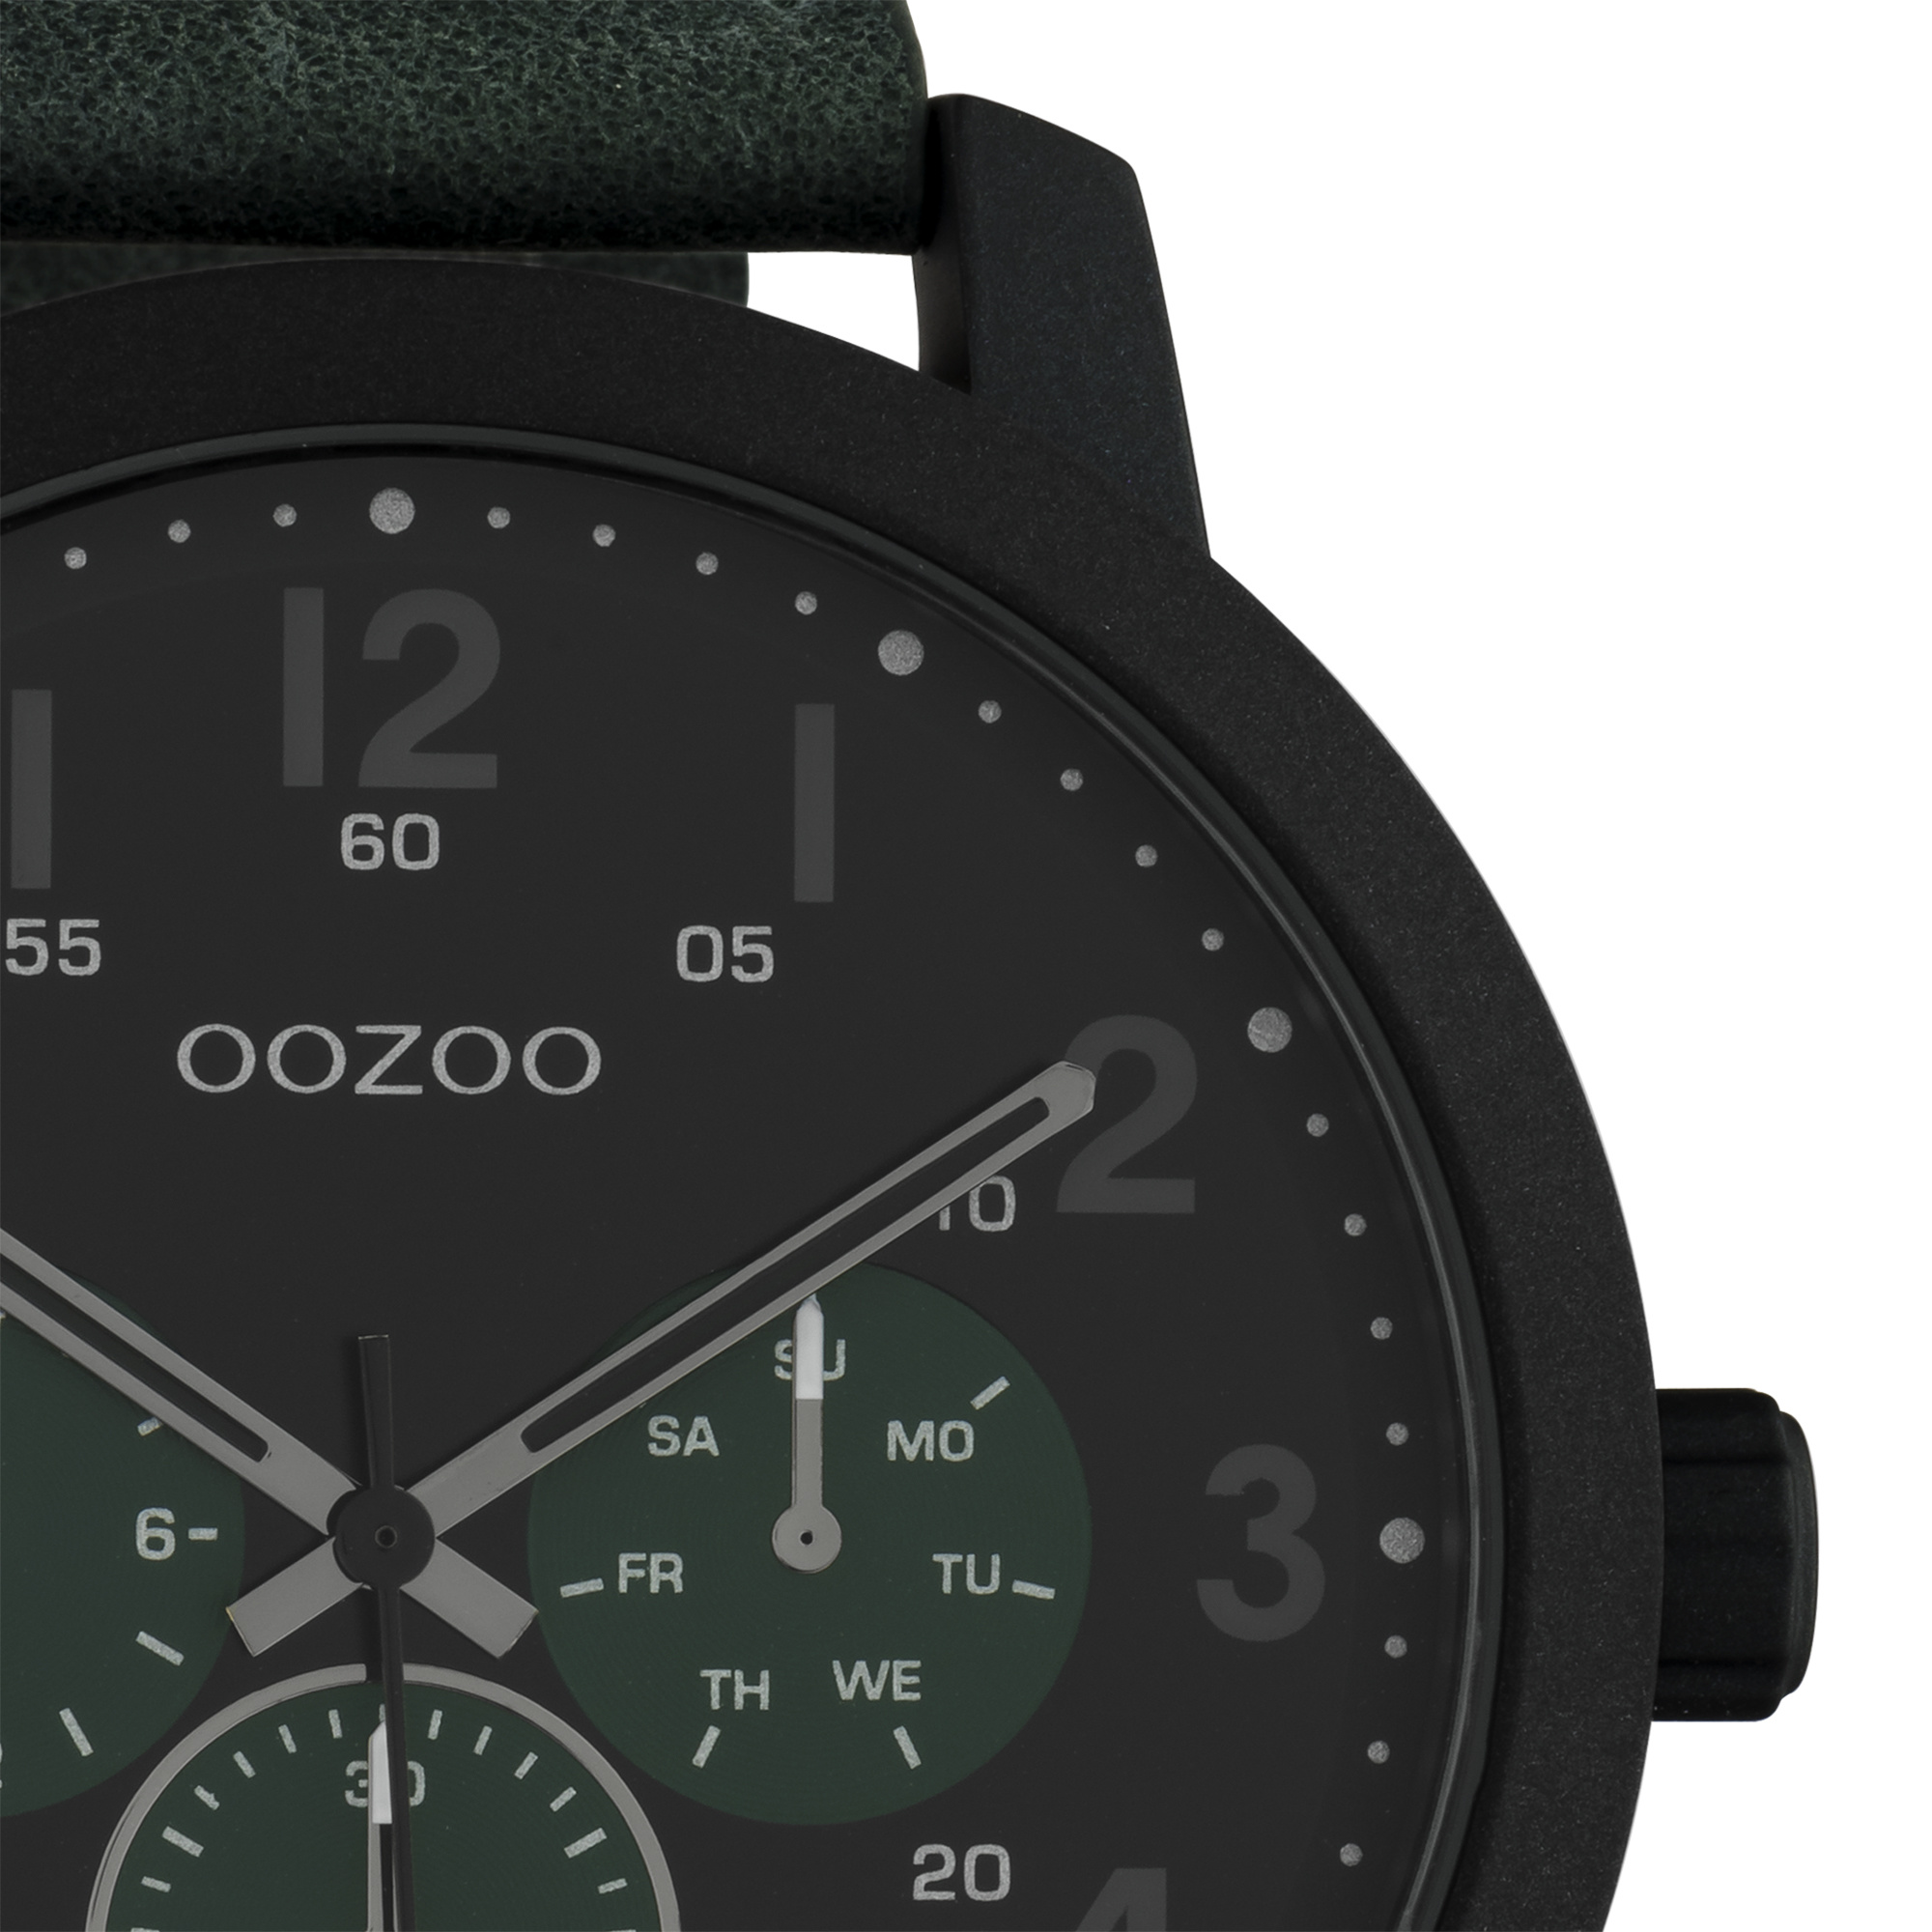 verkoper Reserveren Geometrie OOZOO Timepieces-leren band groen zwart - OOZOO Timepieces